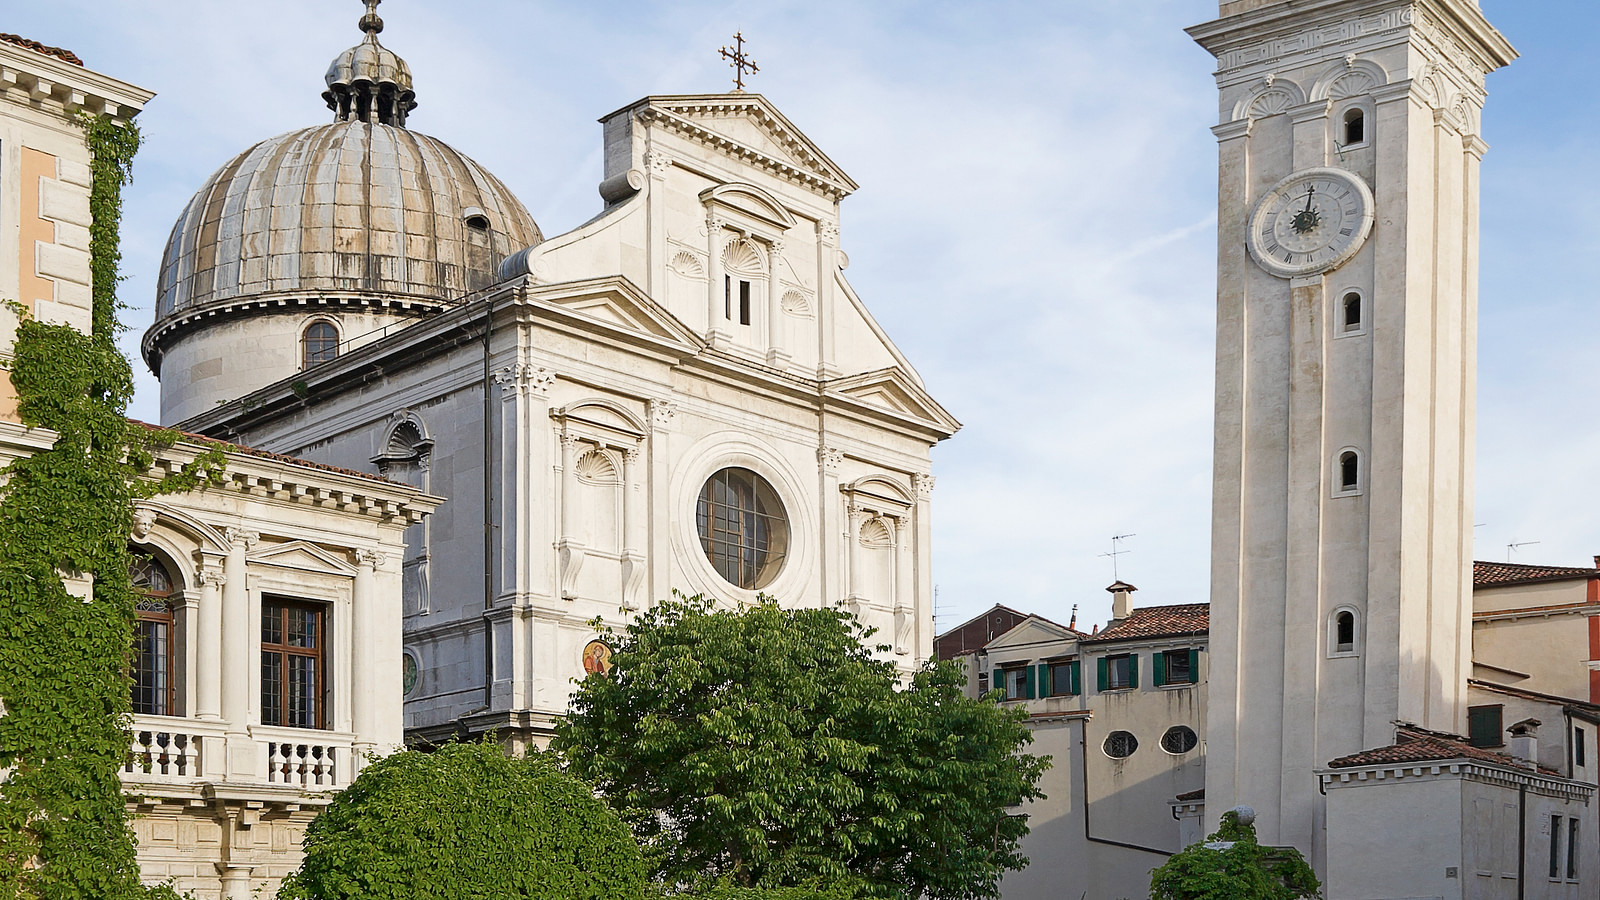 Άγιος Γεώργιος των Ελλήνων: Ο ιστορικός ναός στη Βενετία με την εκπληκτική ιστορία και το καμπαναριό που γέρνει